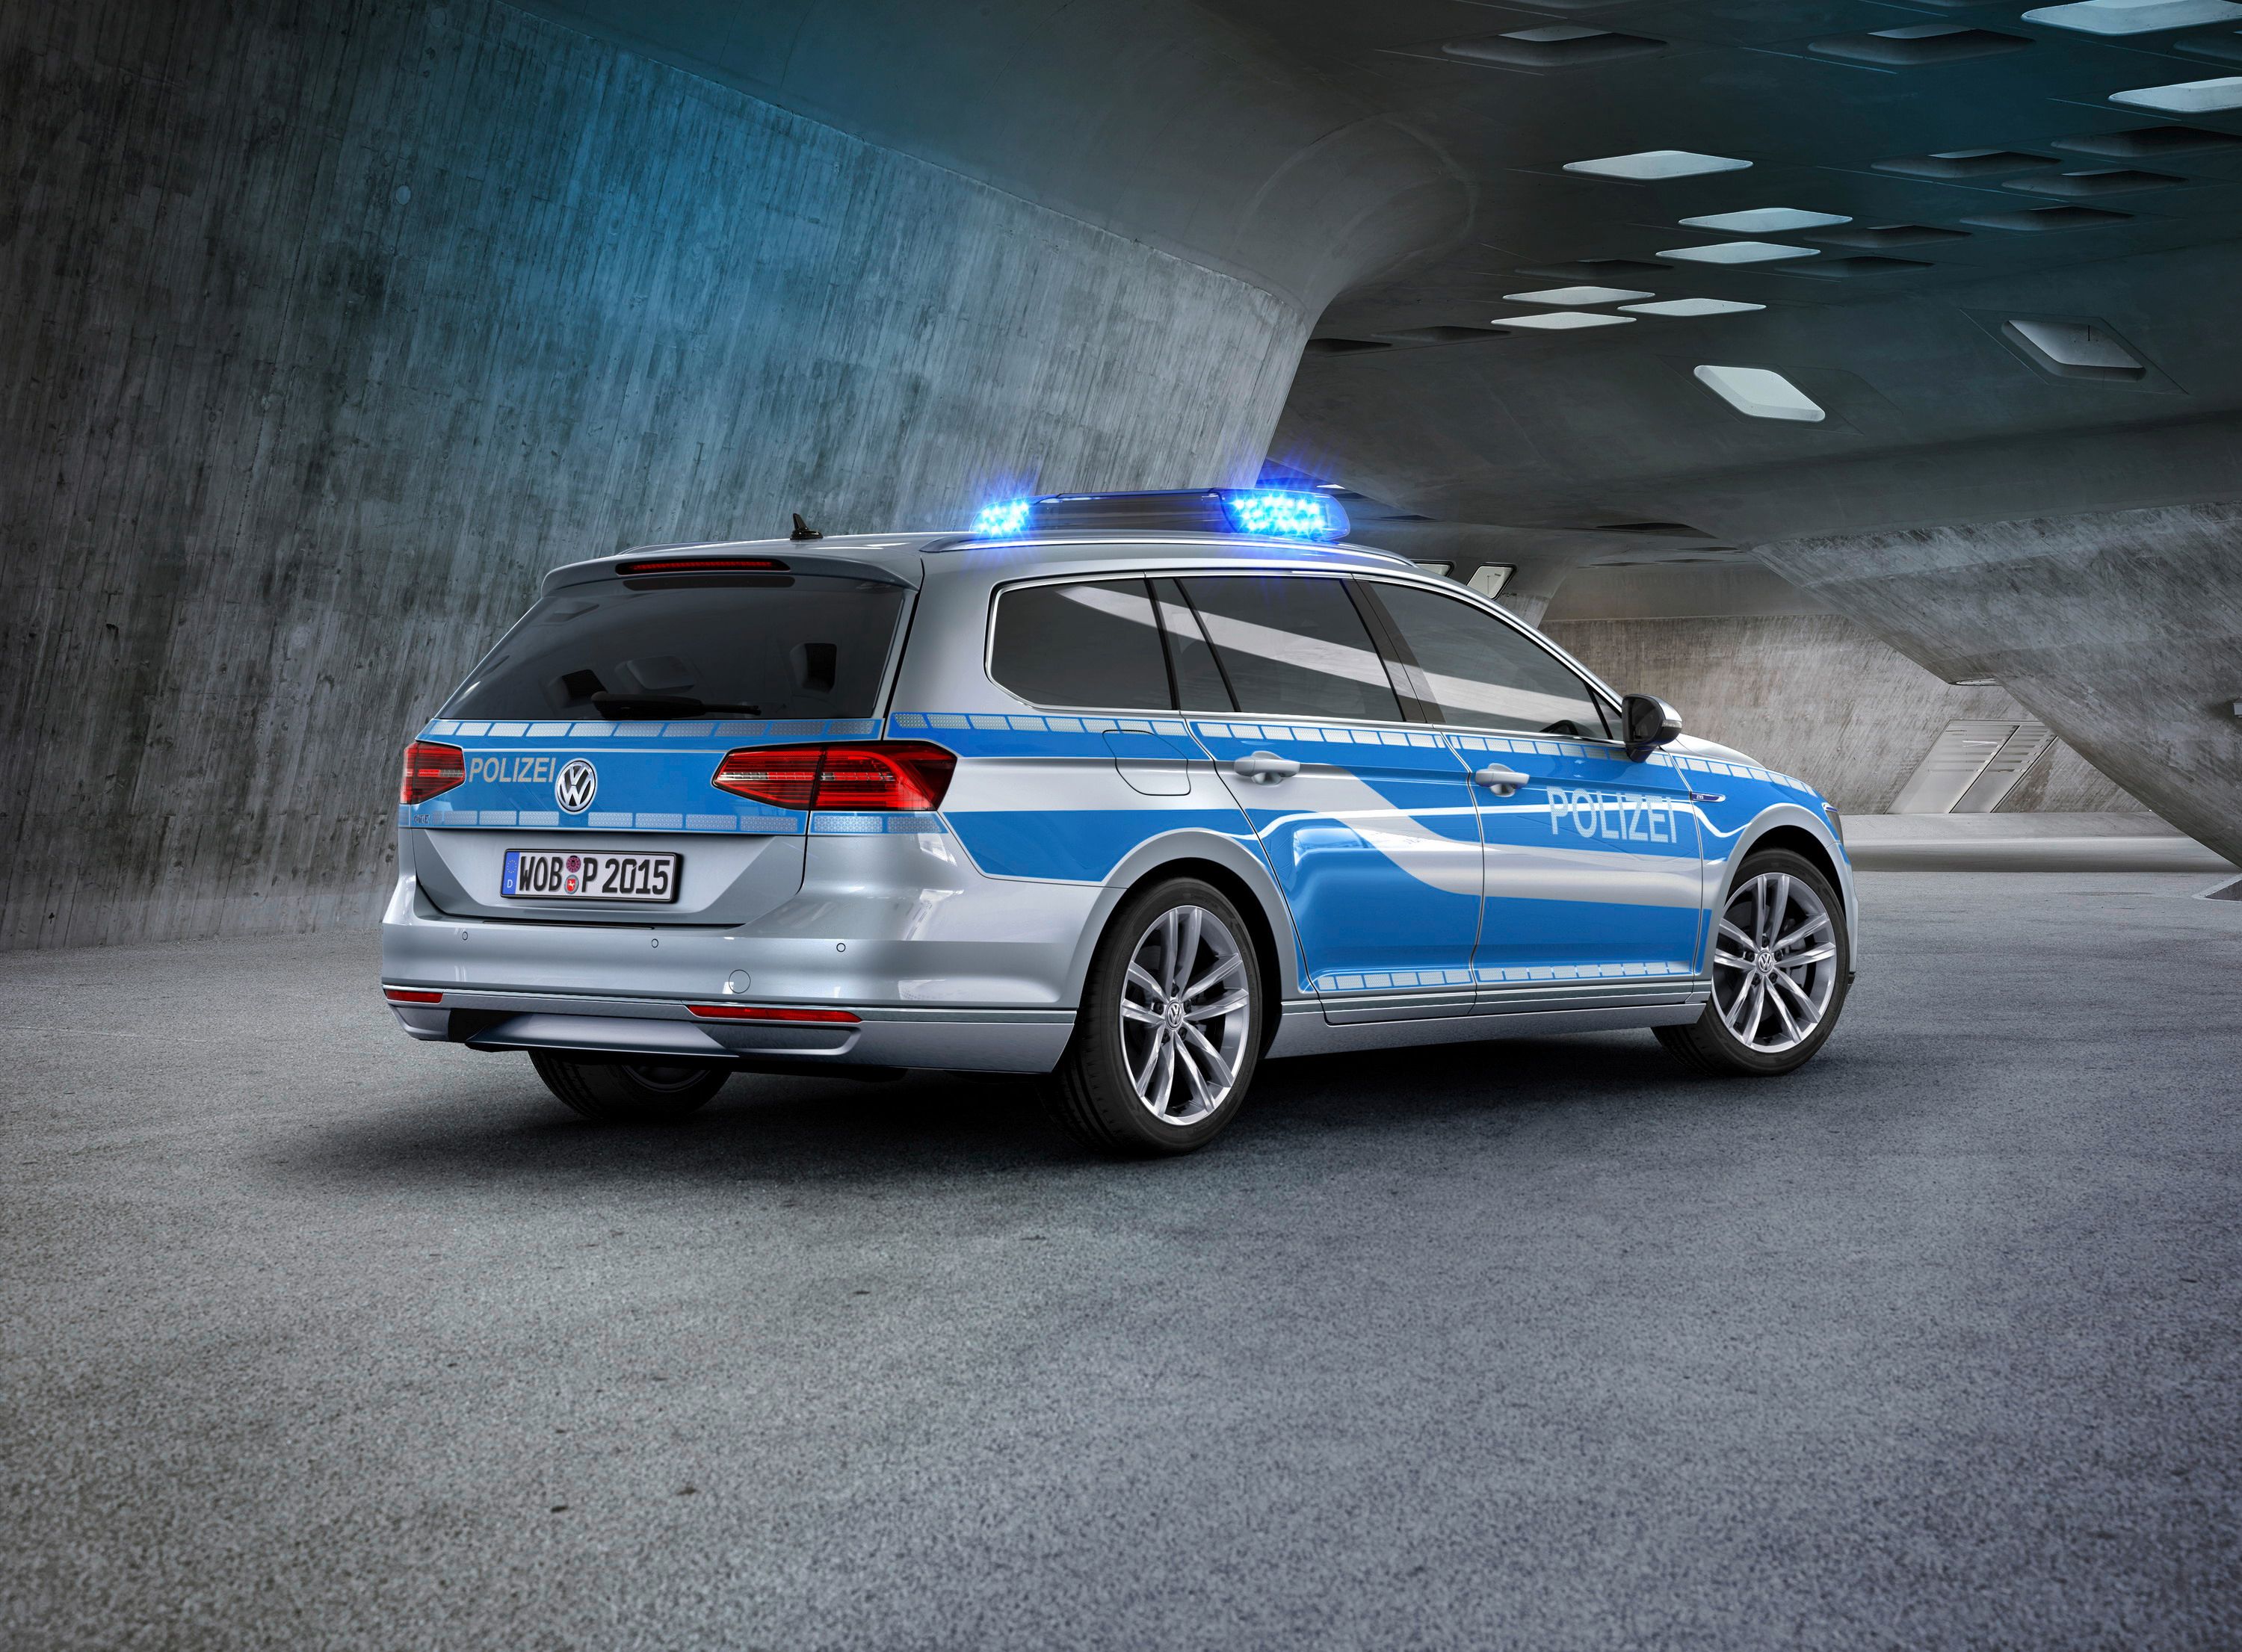 2015 Volkswagen Passat GTE Police Car